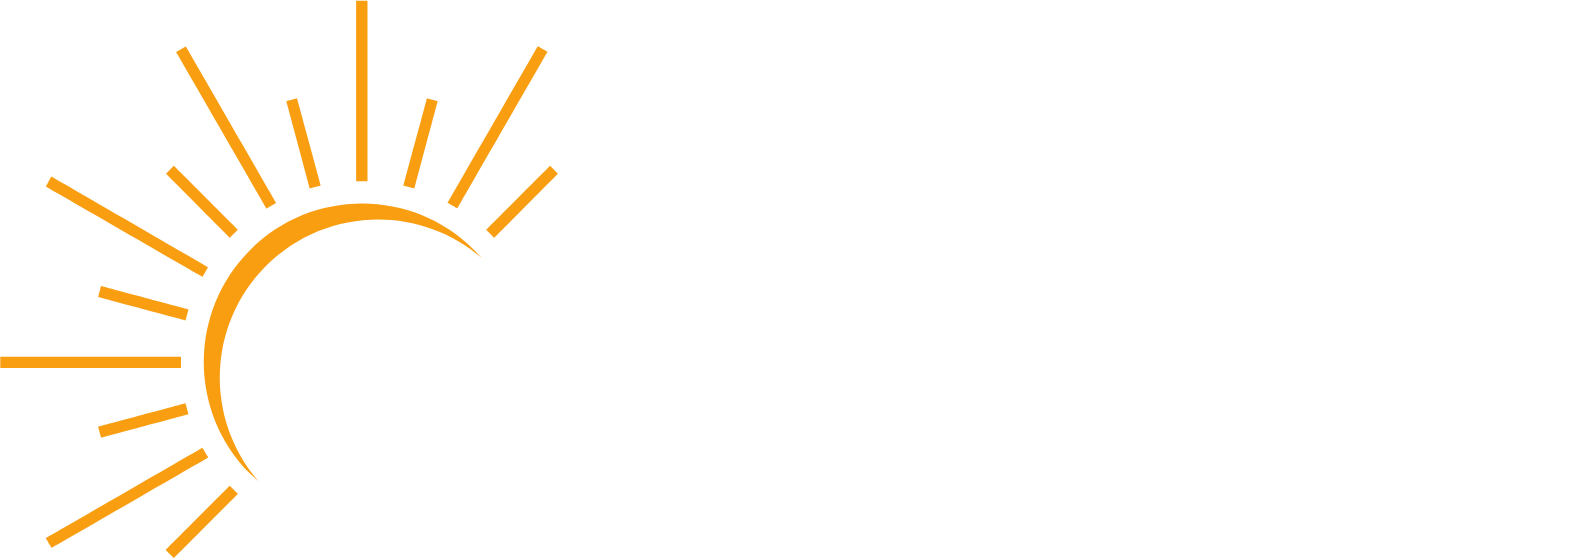 Azure Power
 logo large for dark backgrounds (transparent PNG)